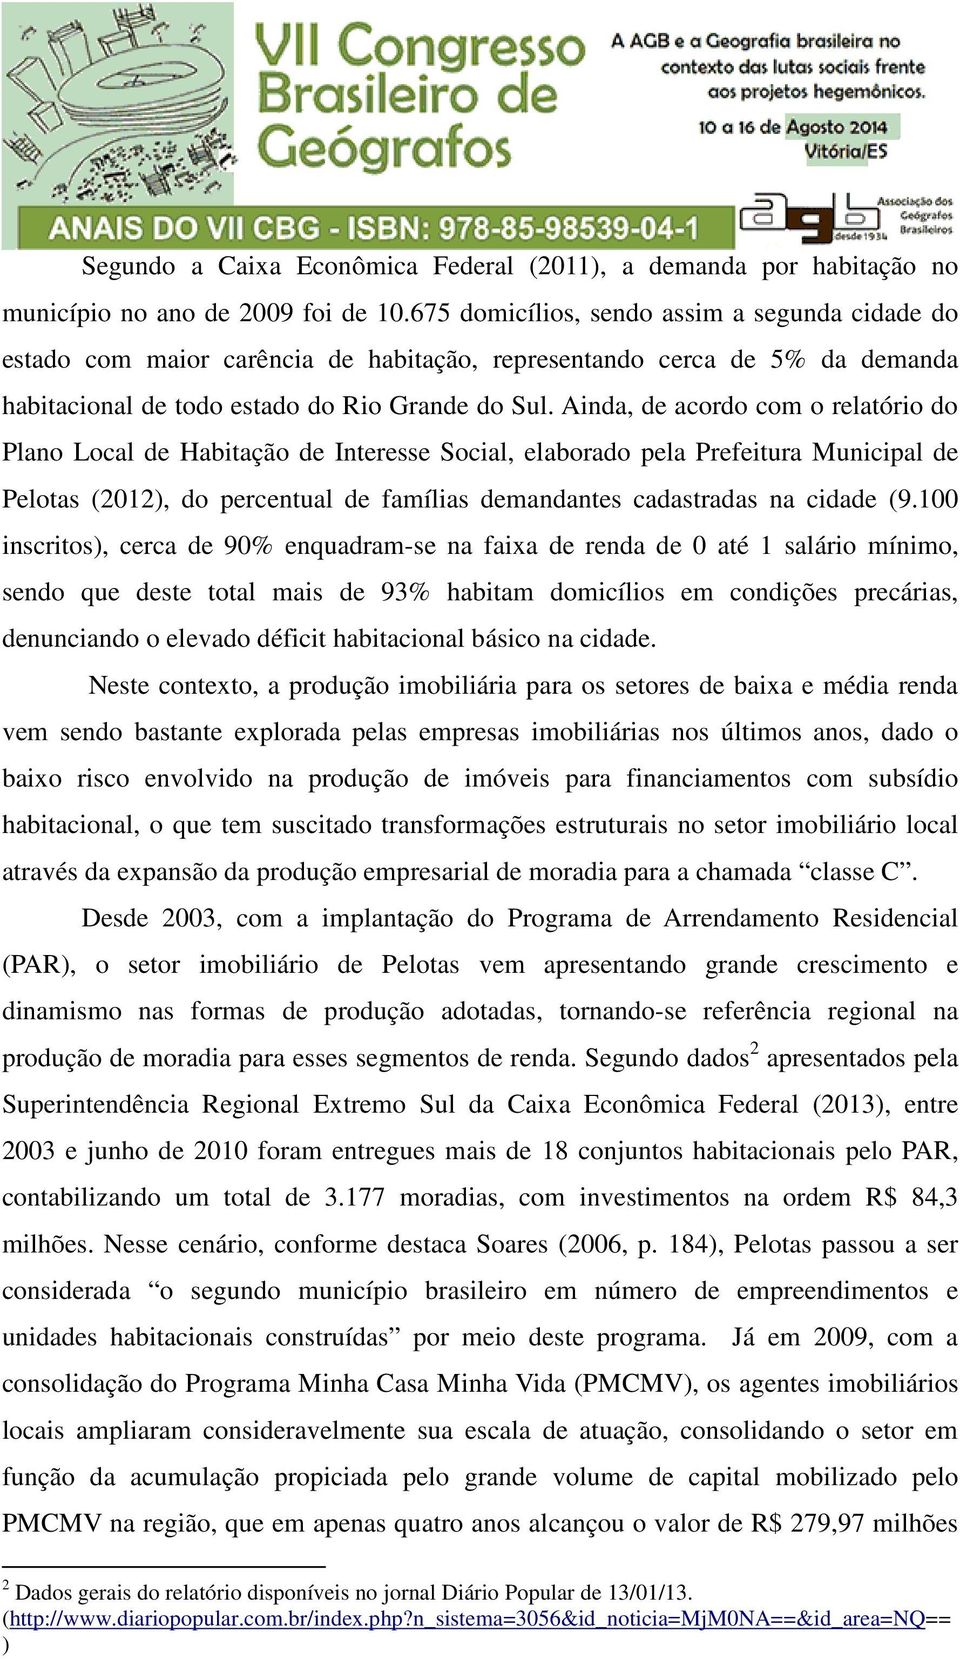 Ainda, de acordo com o relatório do Plano Local de Habitação de Interesse Social, elaborado pela Prefeitura Municipal de Pelotas (2012), do percentual de famílias demandantes cadastradas na cidade (9.